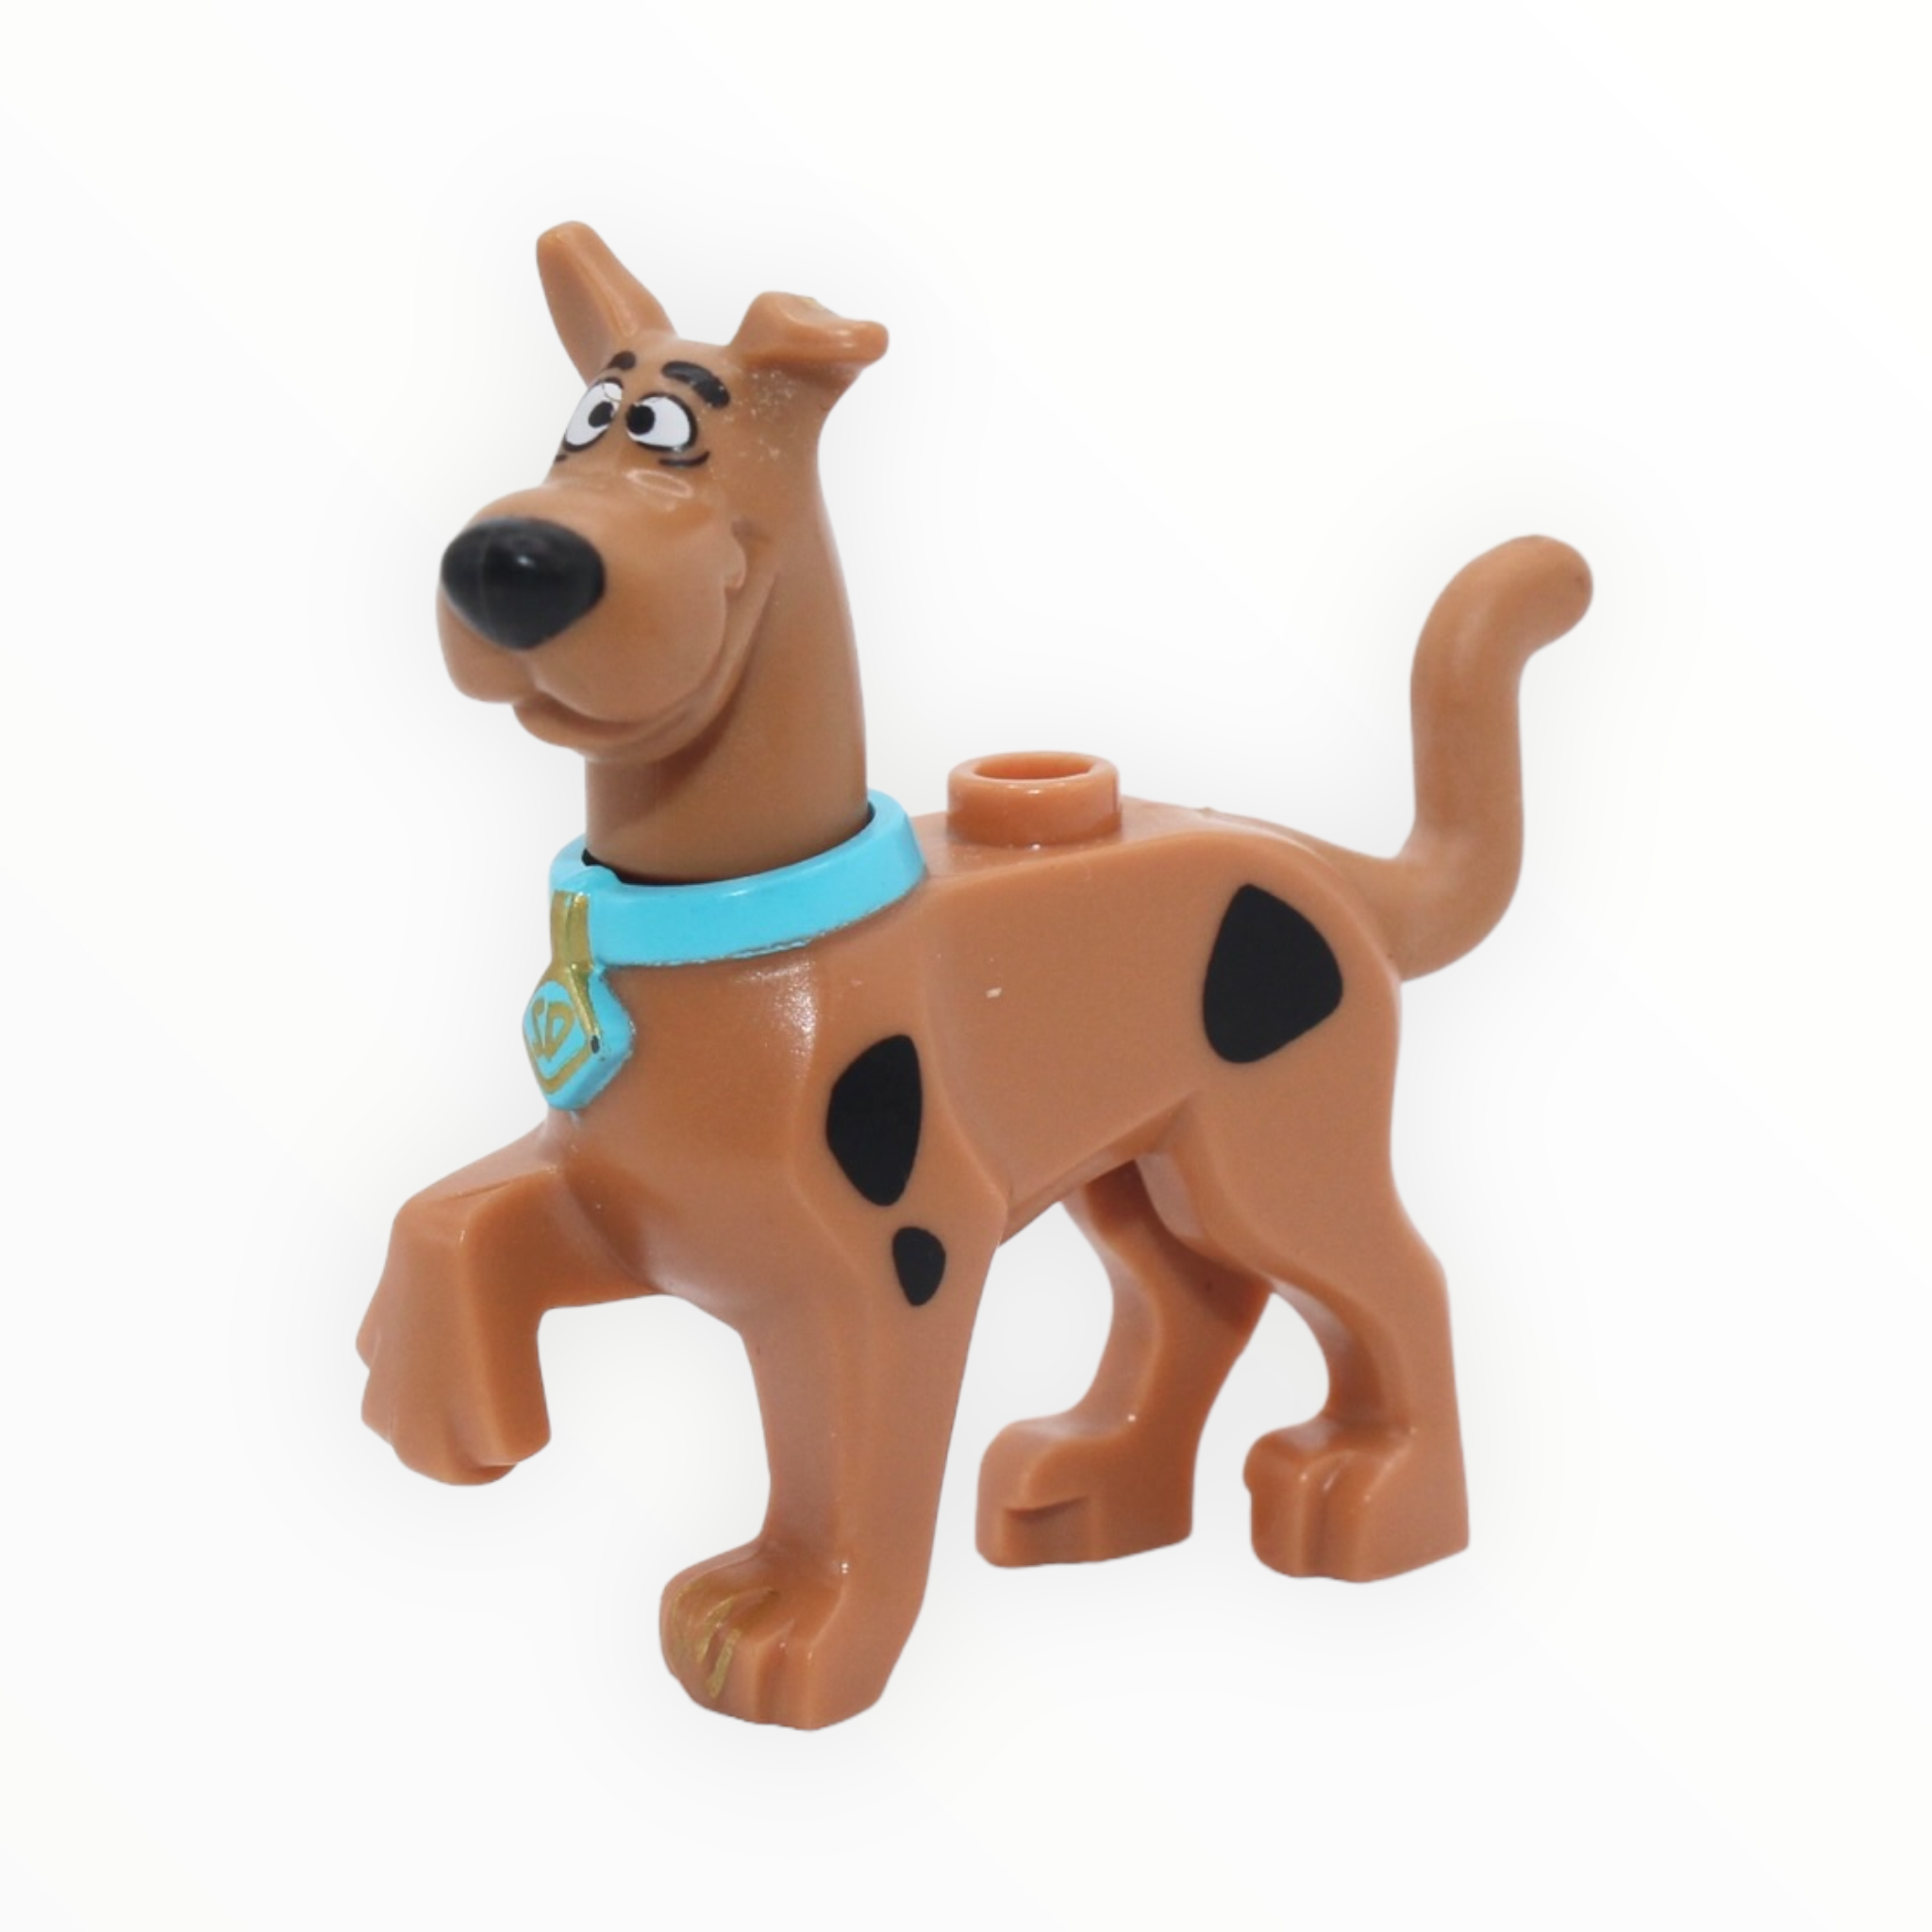 Scooby-Doo (standing, default smile)